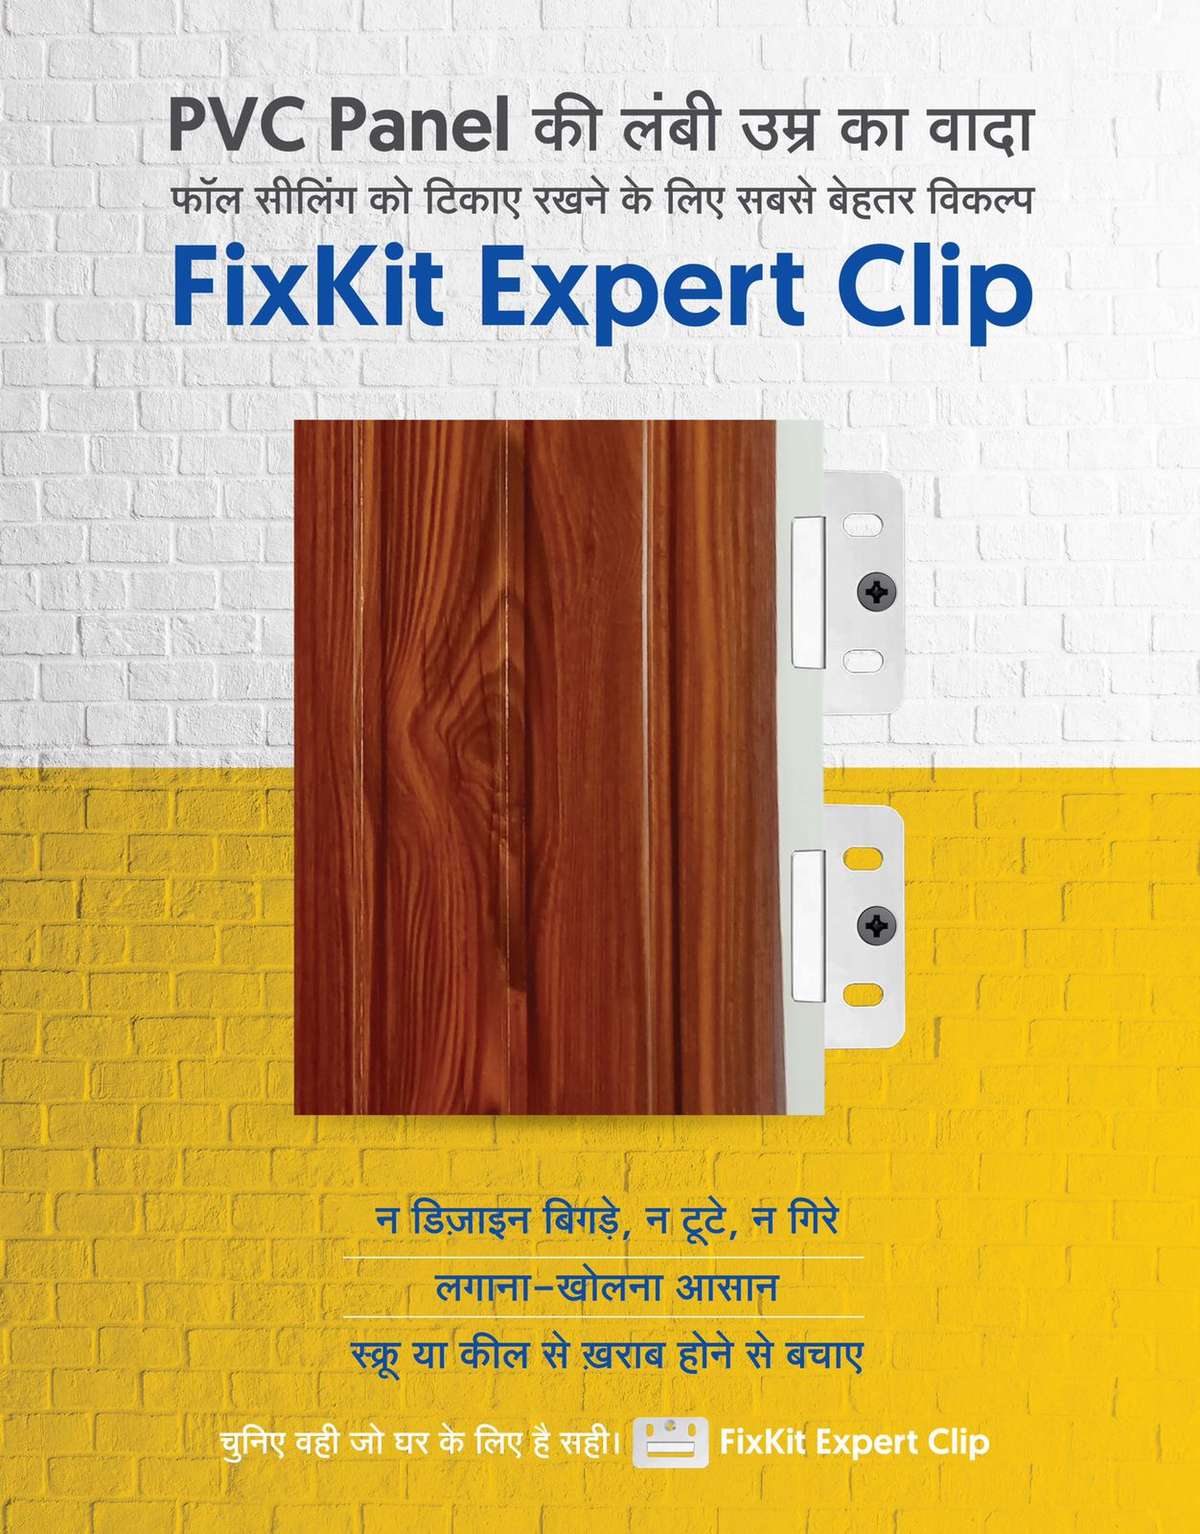 PVC PANEL CLIP
PVC Panel की उमर बढ़ाने का आसन तरीका आ गया आ गया  PVC PANEL Clip.xxxxxxxxxxxxxxxxxxxxxxxxxxxxxxxxxxxxxxxx          PVC Panel  के लॉक को स्क्रू  और किल से खराब होने से बचाए
Expert Clip मदद से लगाना और खोलने मे आसान है FC